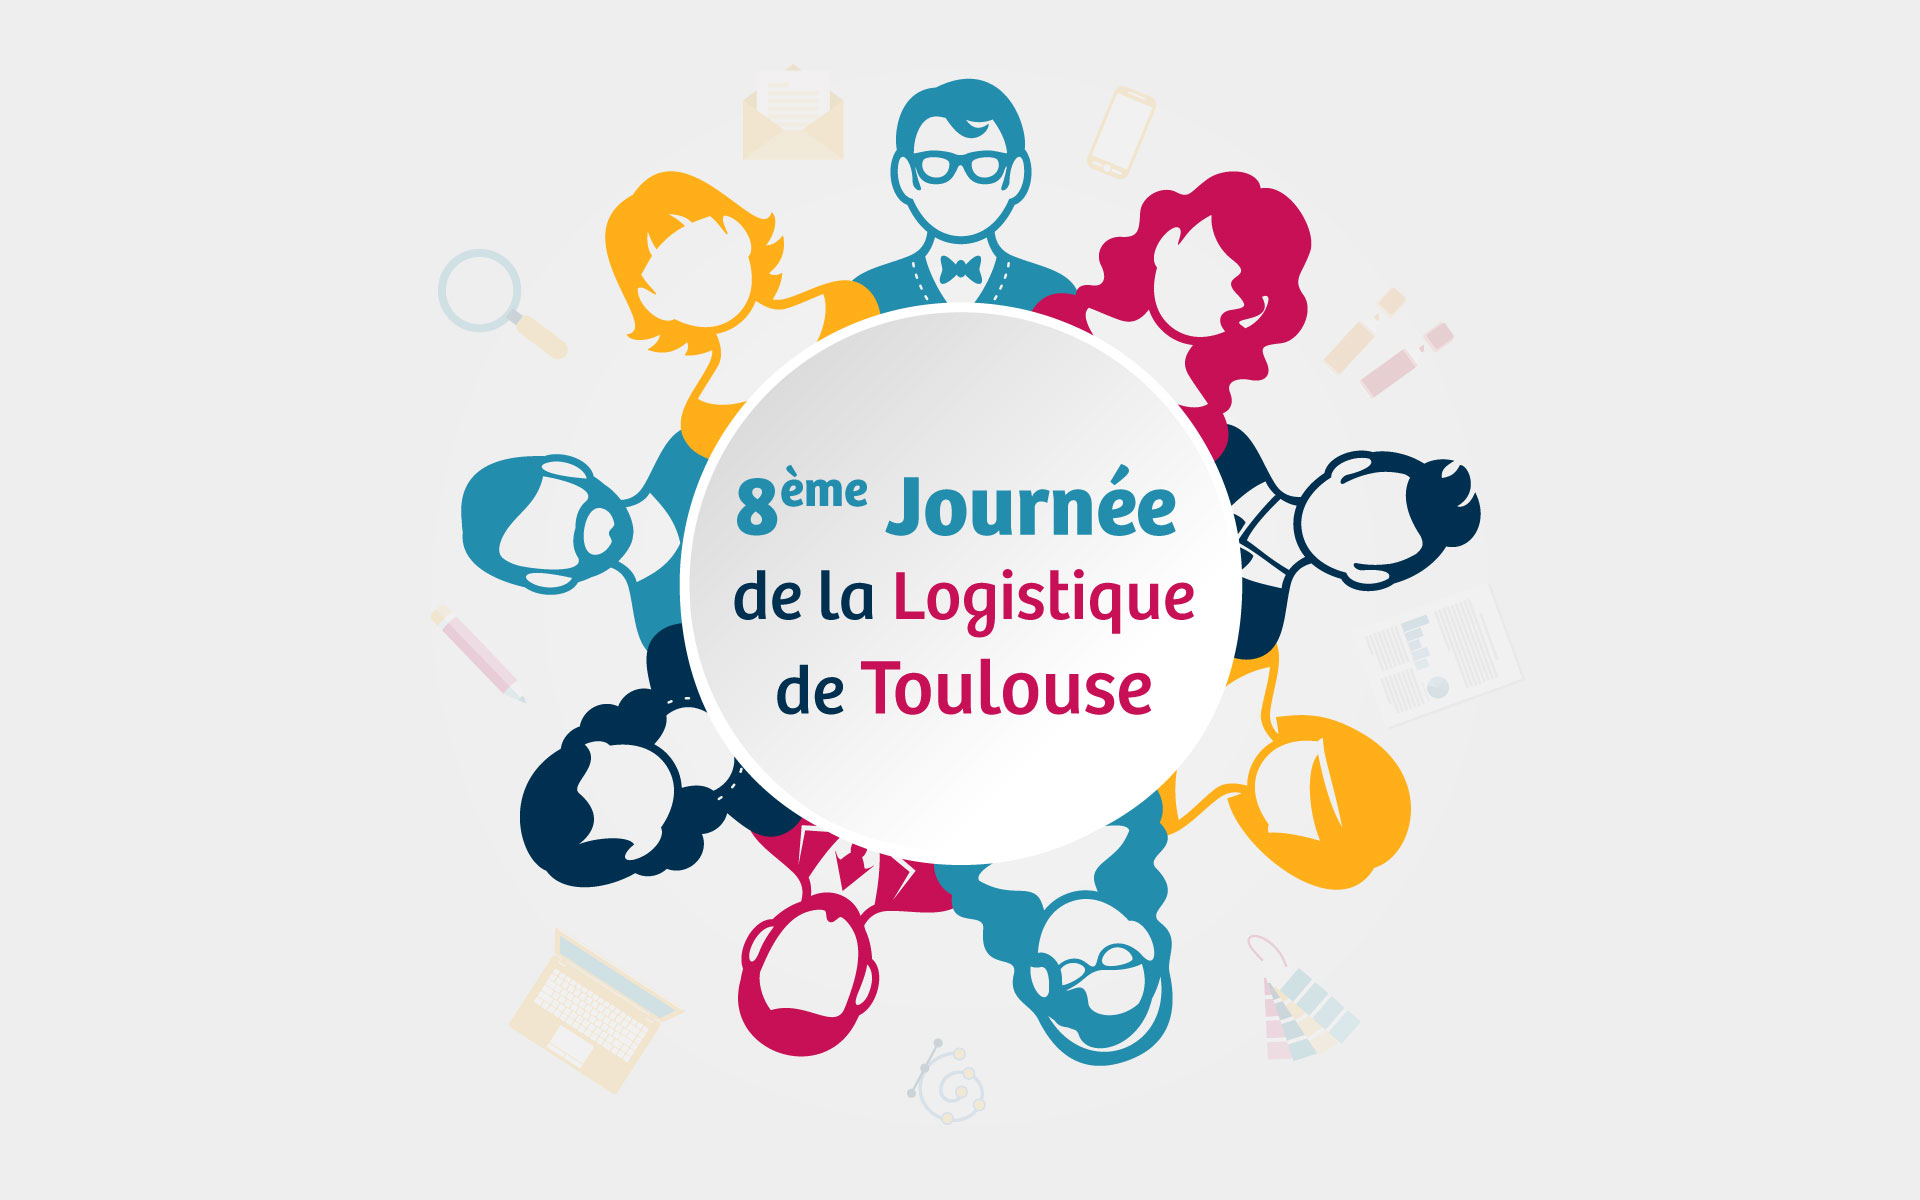 8eme-Journee-de-la-logistique-de-Toulouse-Opus-31-Consultant-Logistique